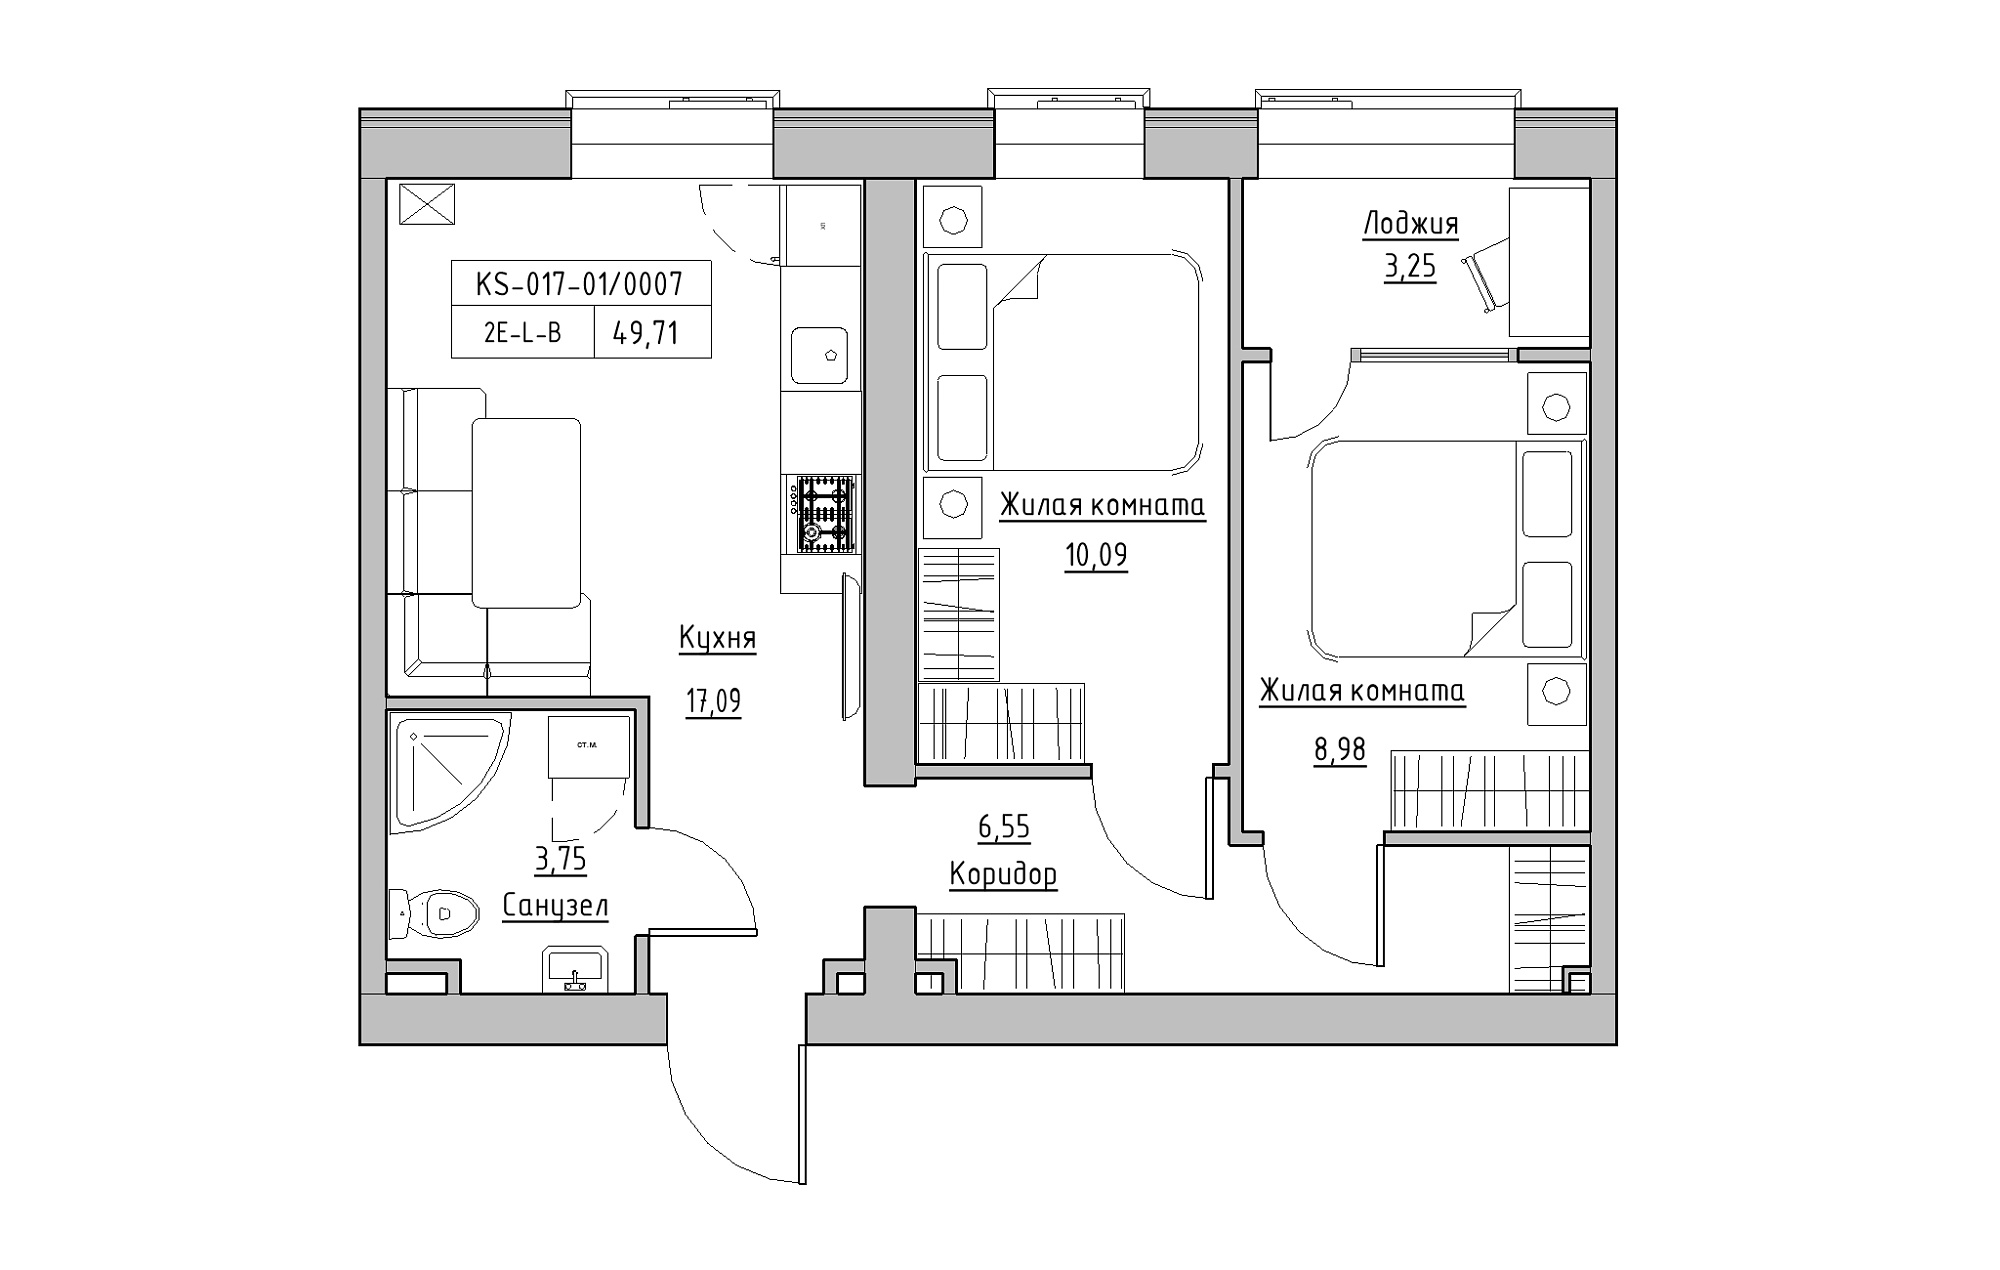 Планування 2-к квартира площею 49.71м2, KS-017-01/0007.